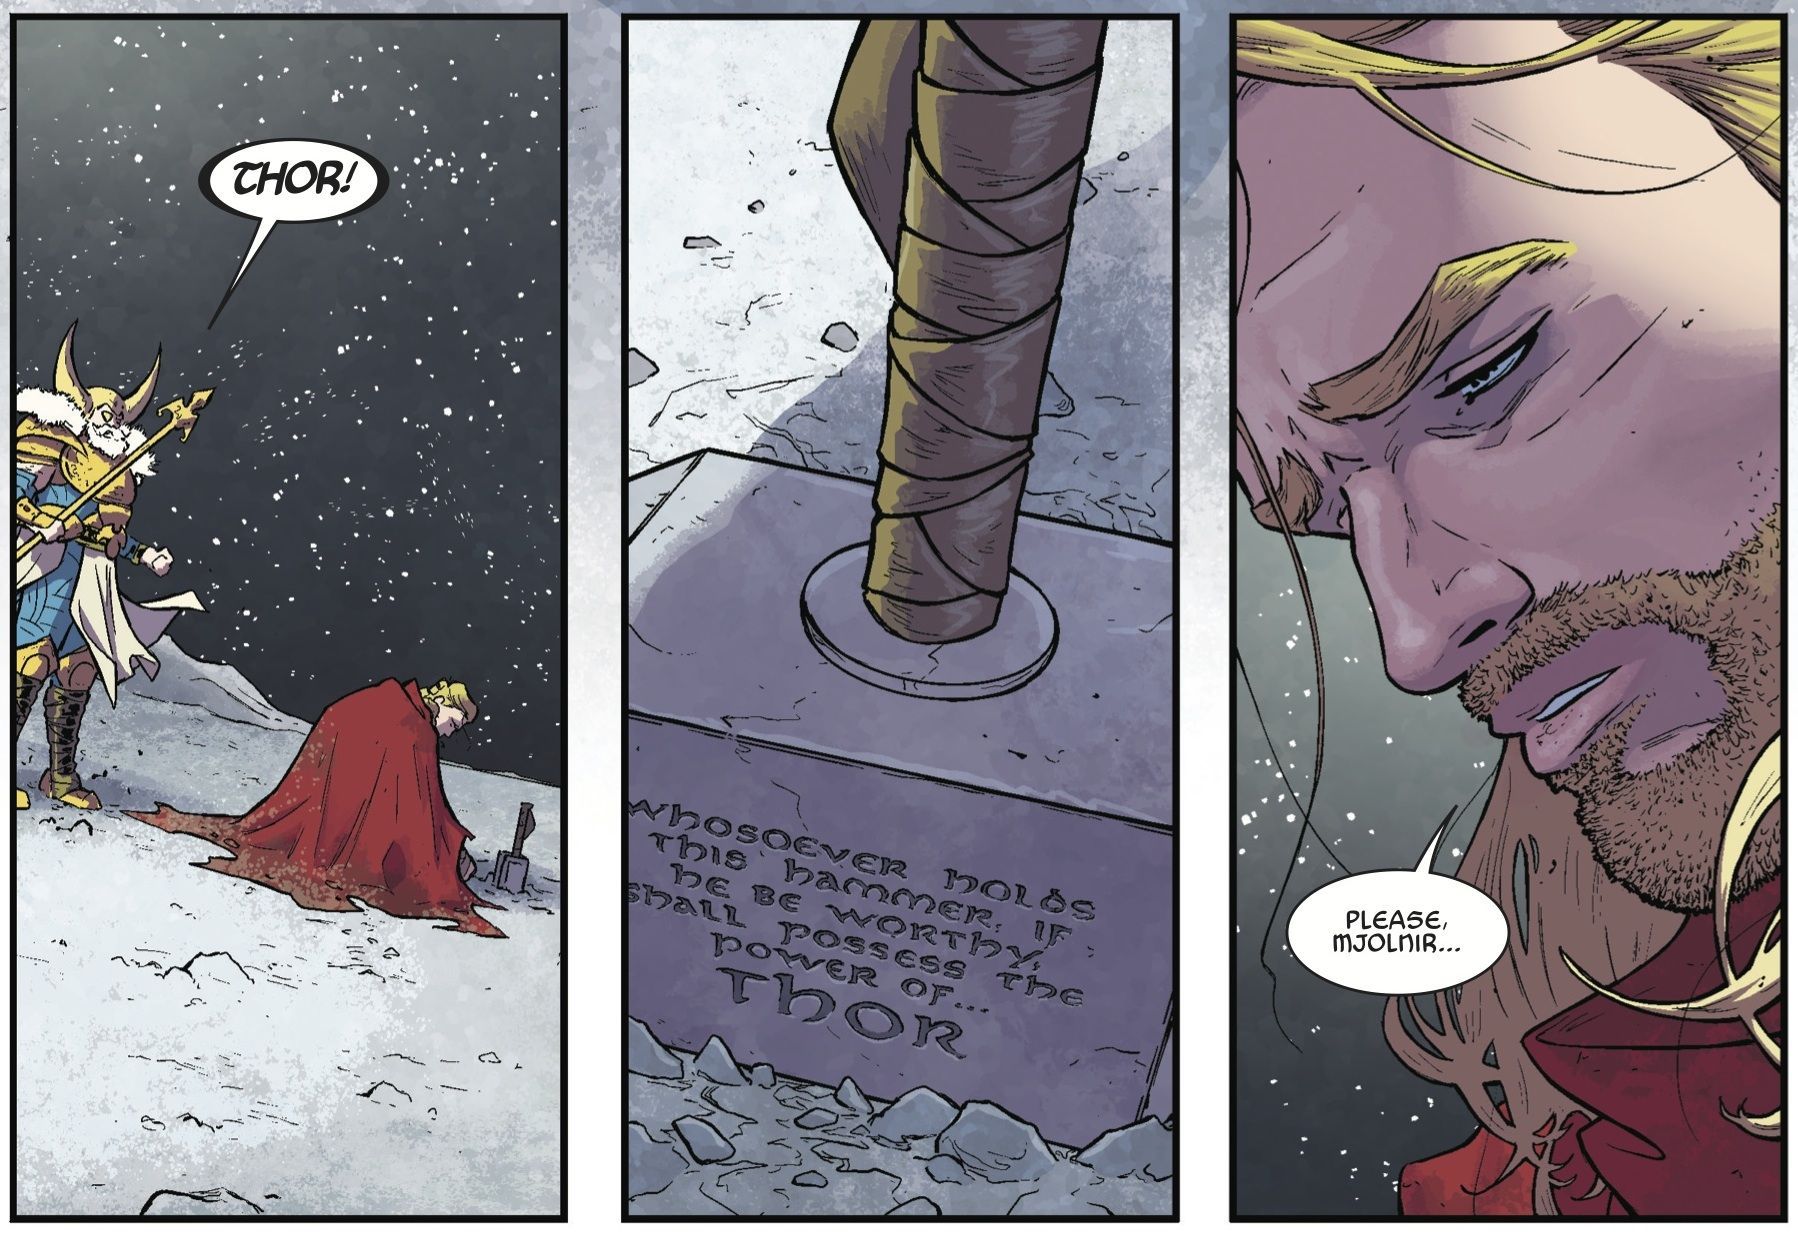 Jason Aaron teases comic for Thor's hammer